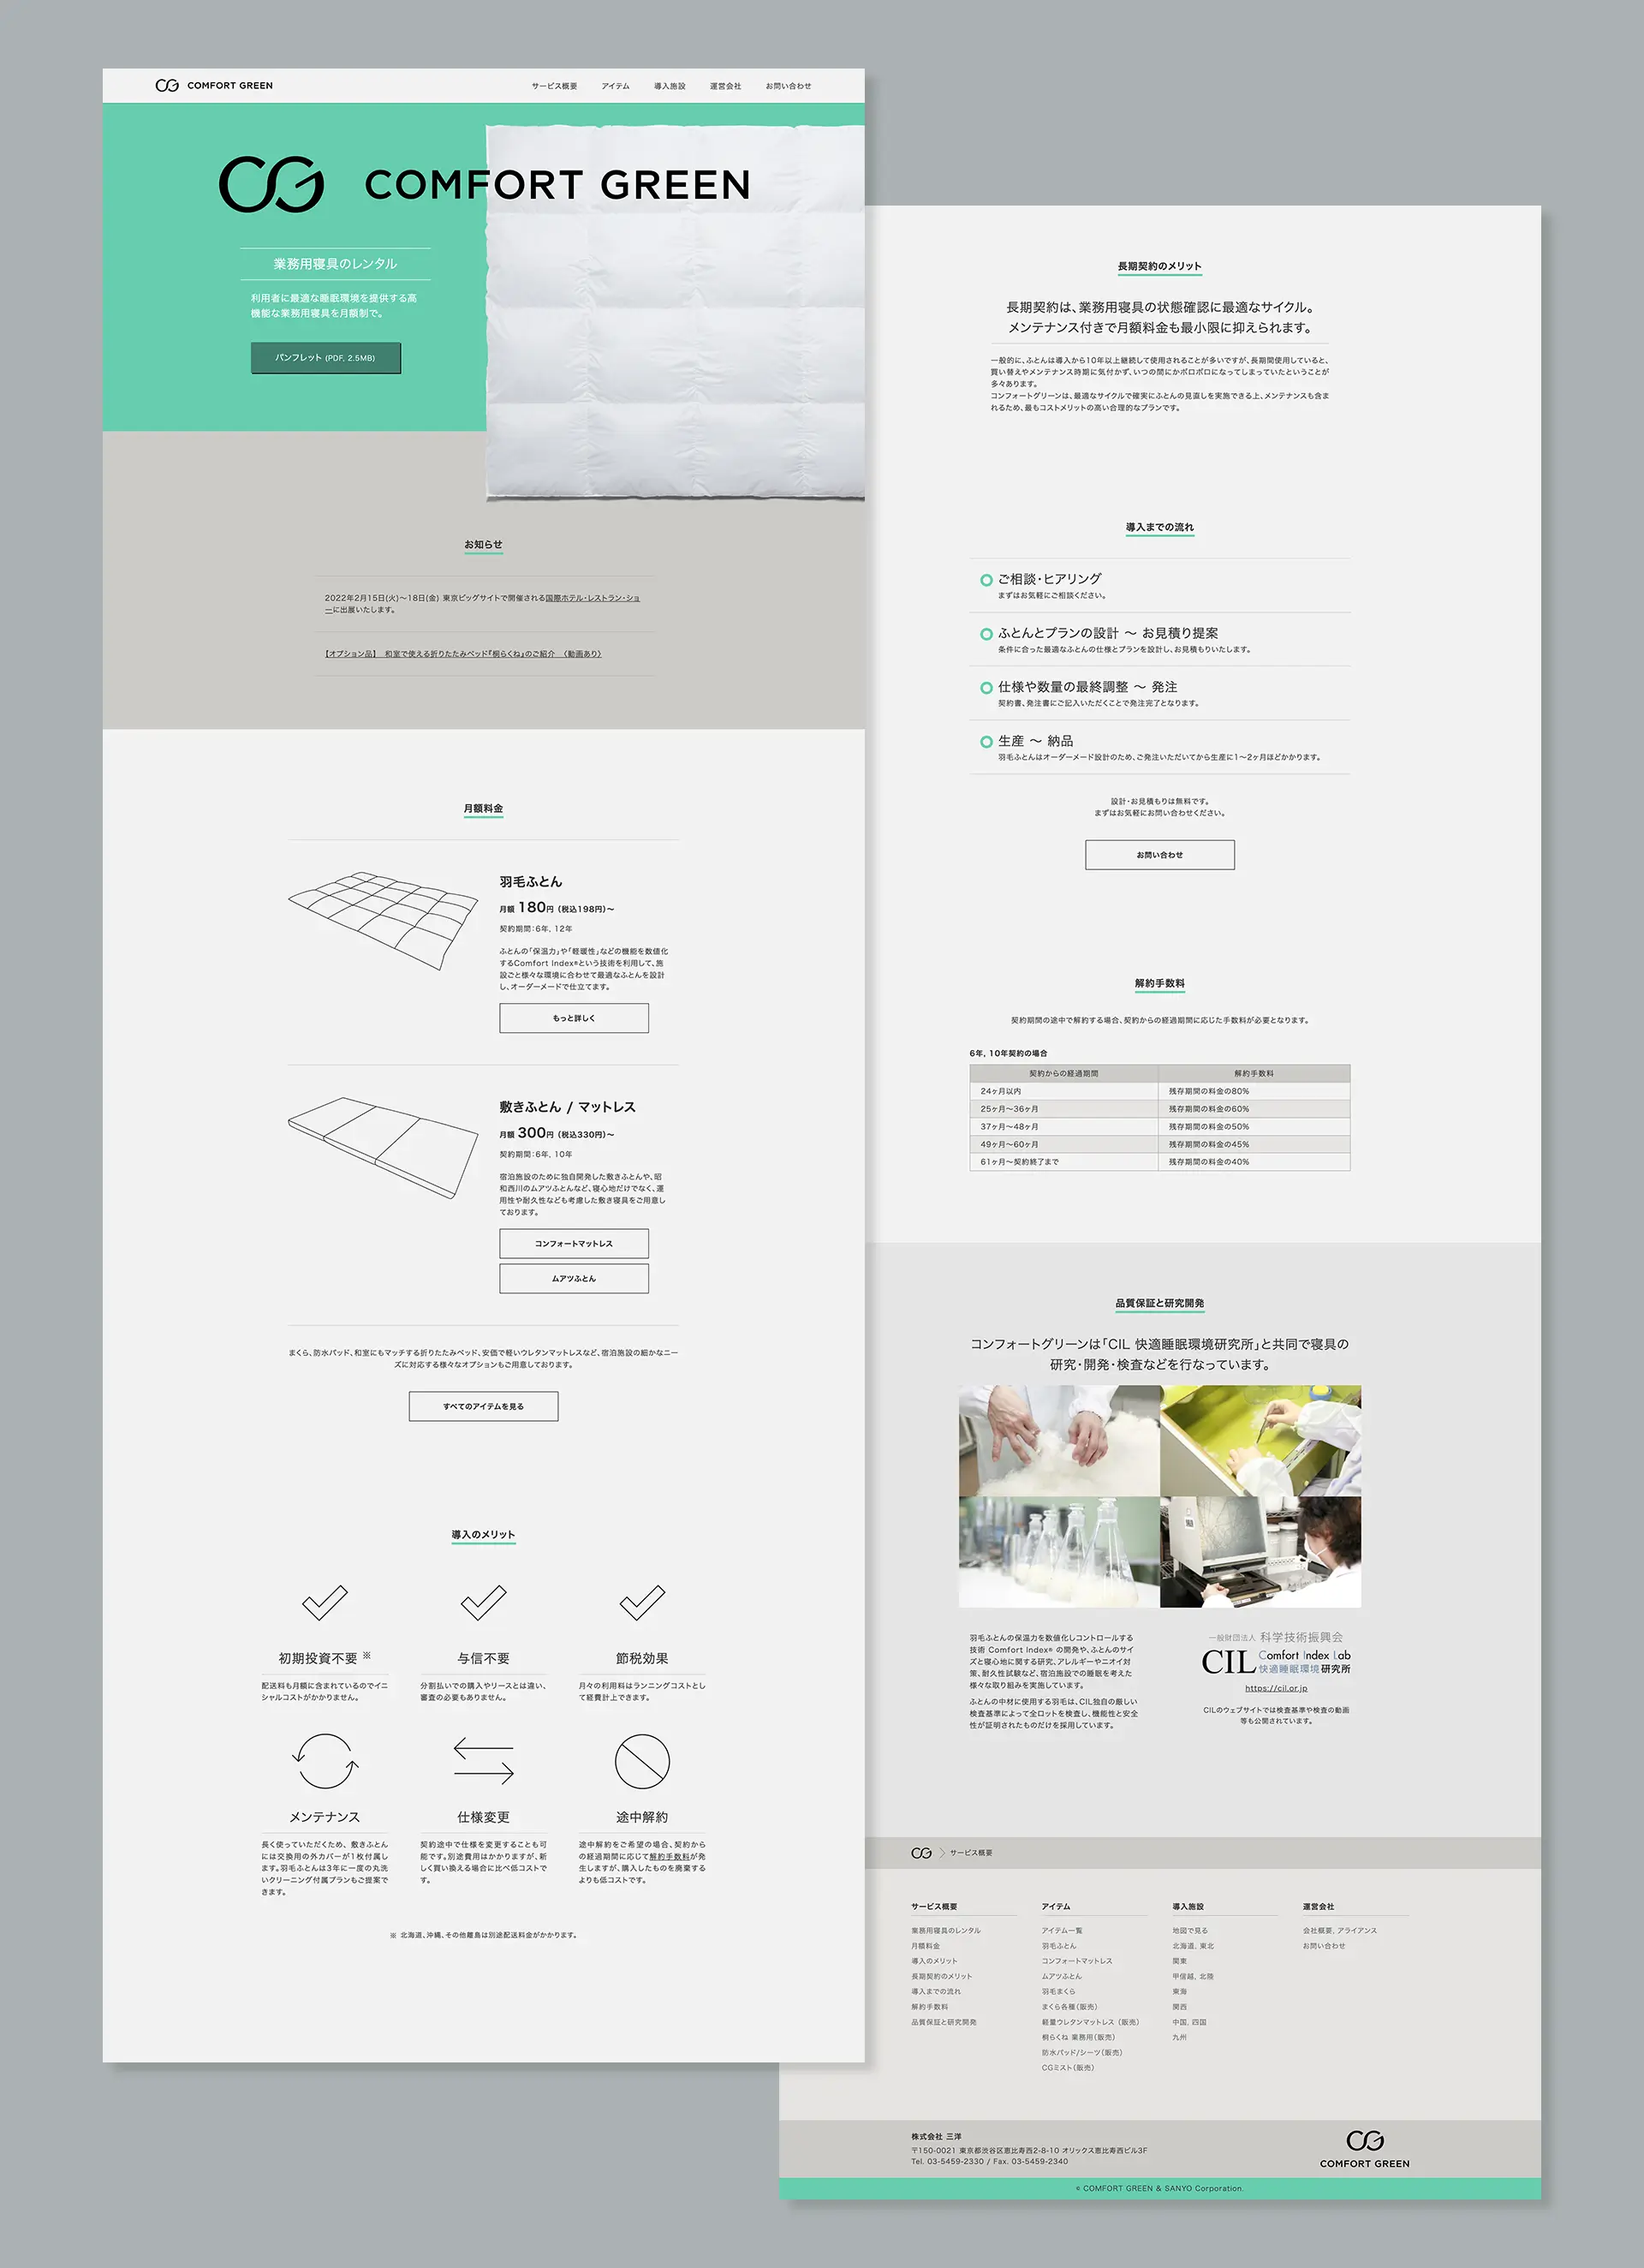 Comfort Green - Website Design